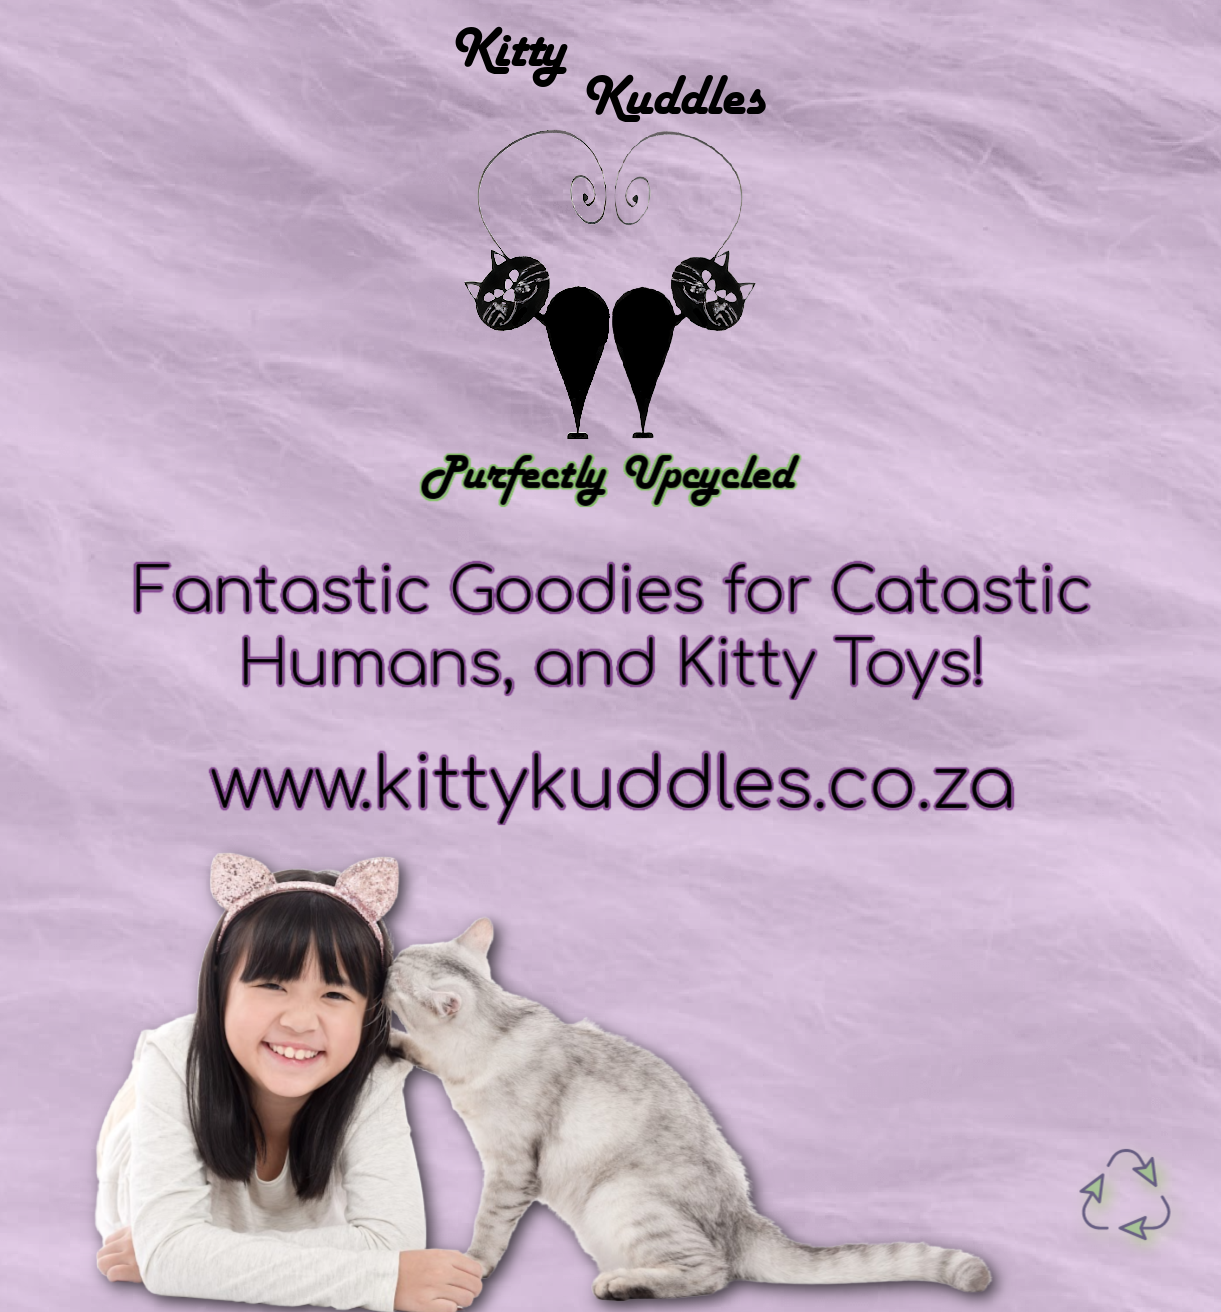 Kitty Kuddles AD